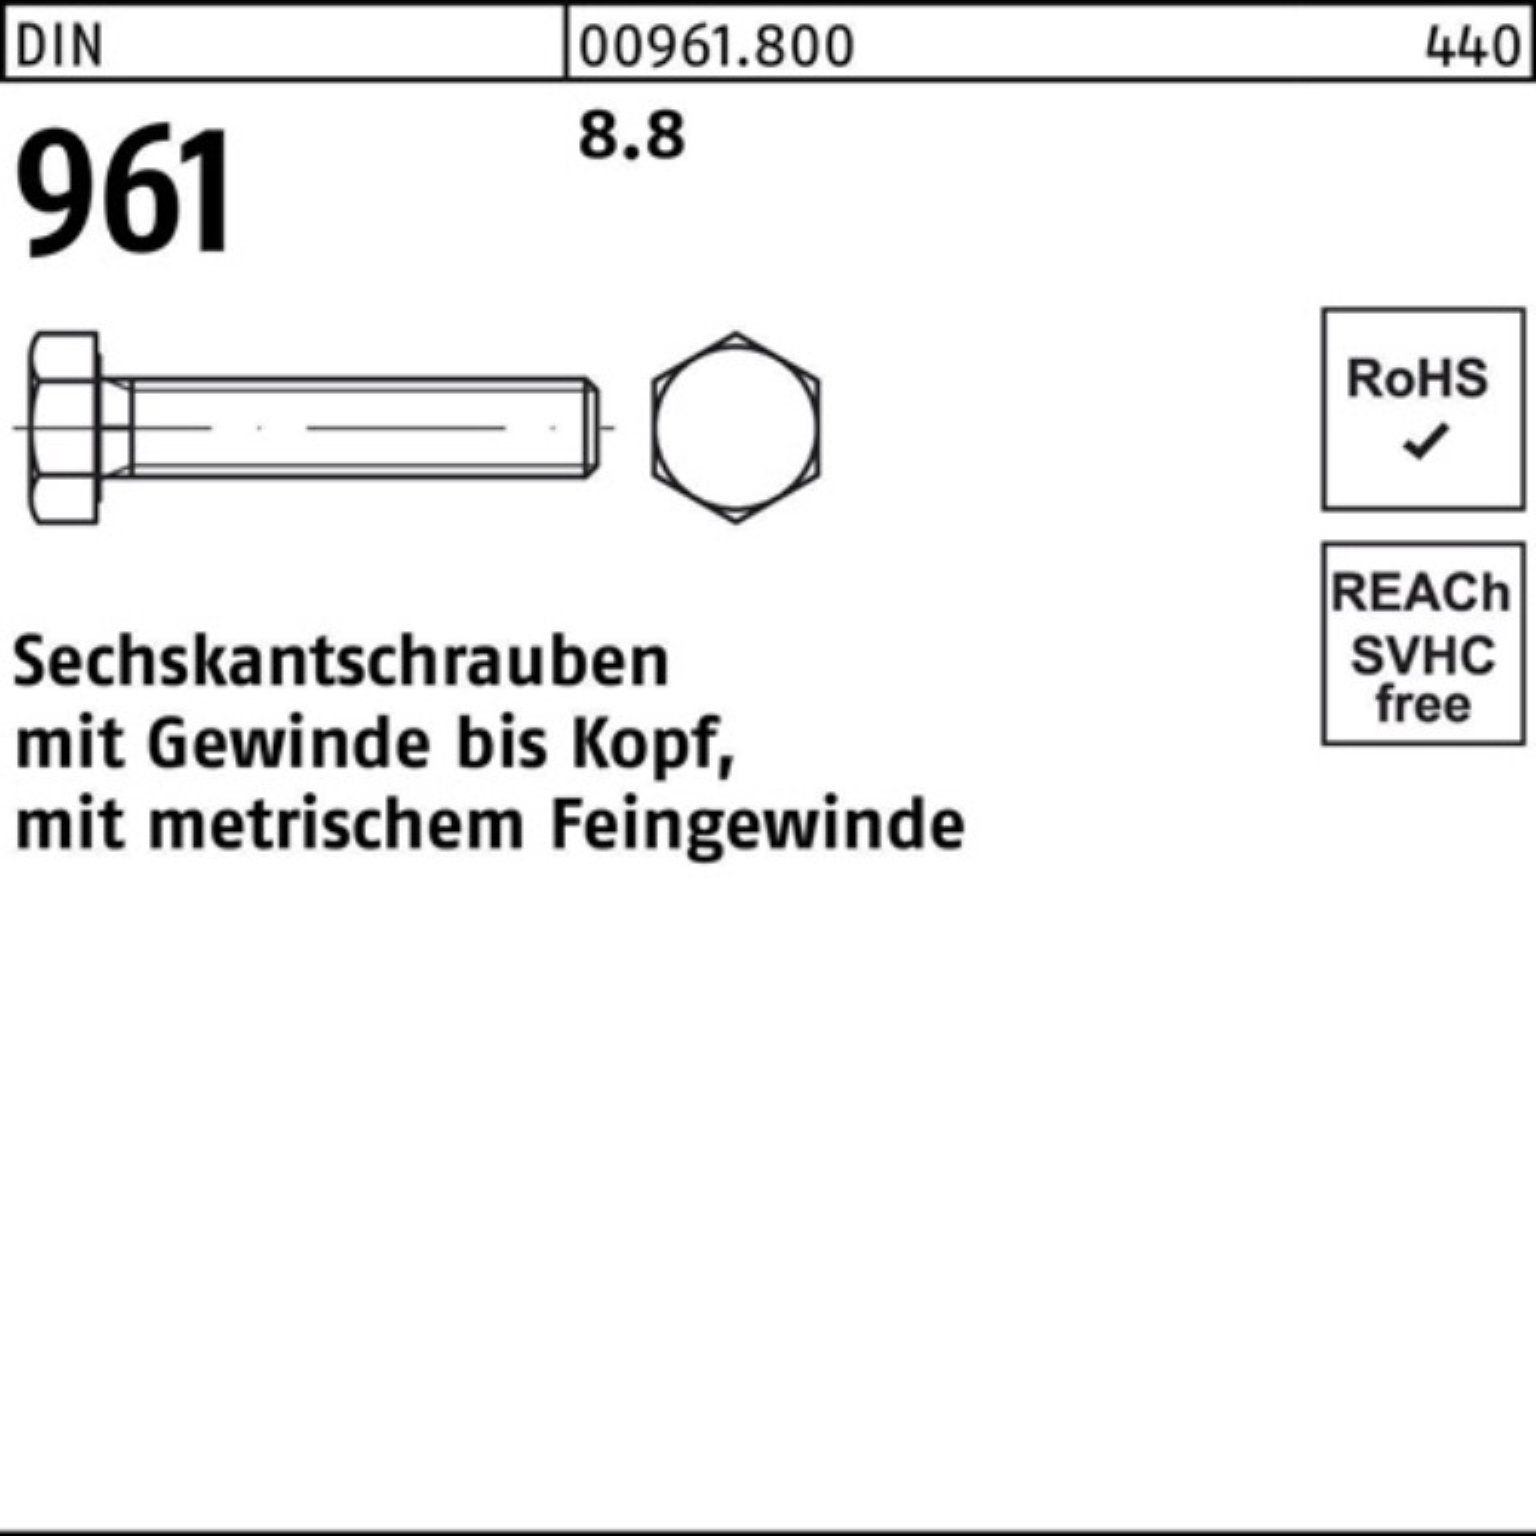 DIN Stück VG Sechskantschraube Sechskantschraube 96 DIN Reyher 961 M24x2x Pack 8.8 60 25 100er